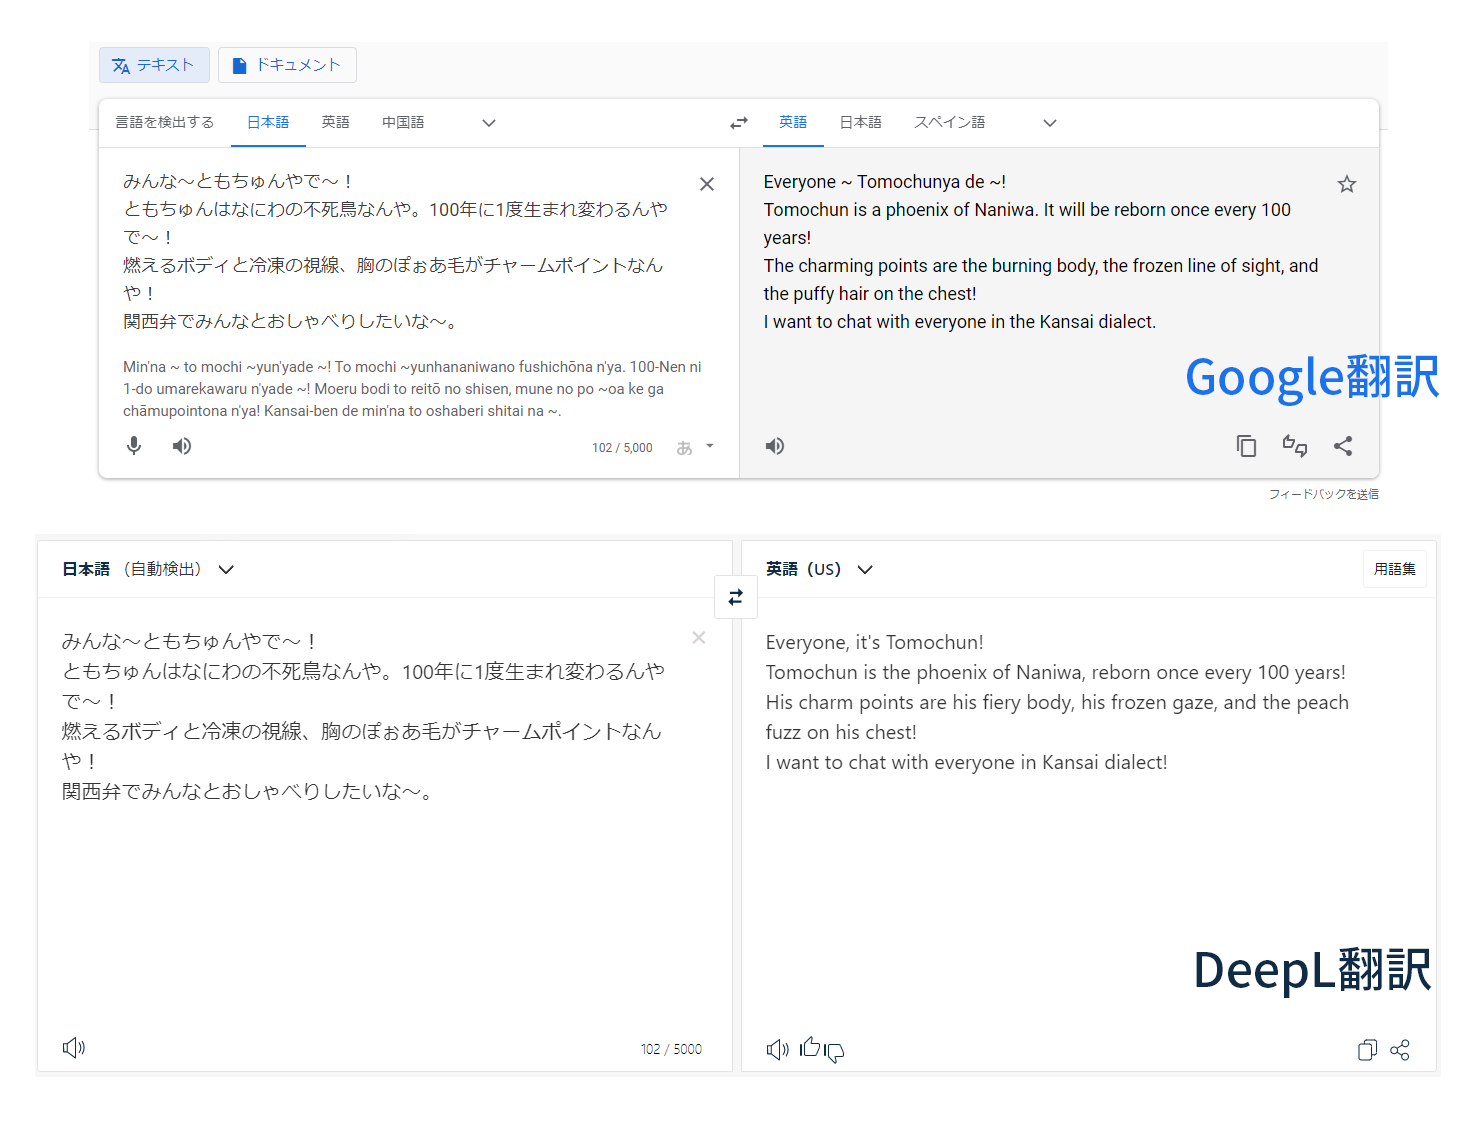 Google翻訳とDeepL翻訳でともちゅんの自己紹介文を英訳した場合の比較画像。DeepLの翻訳文の方が自然な英文に訳されている。